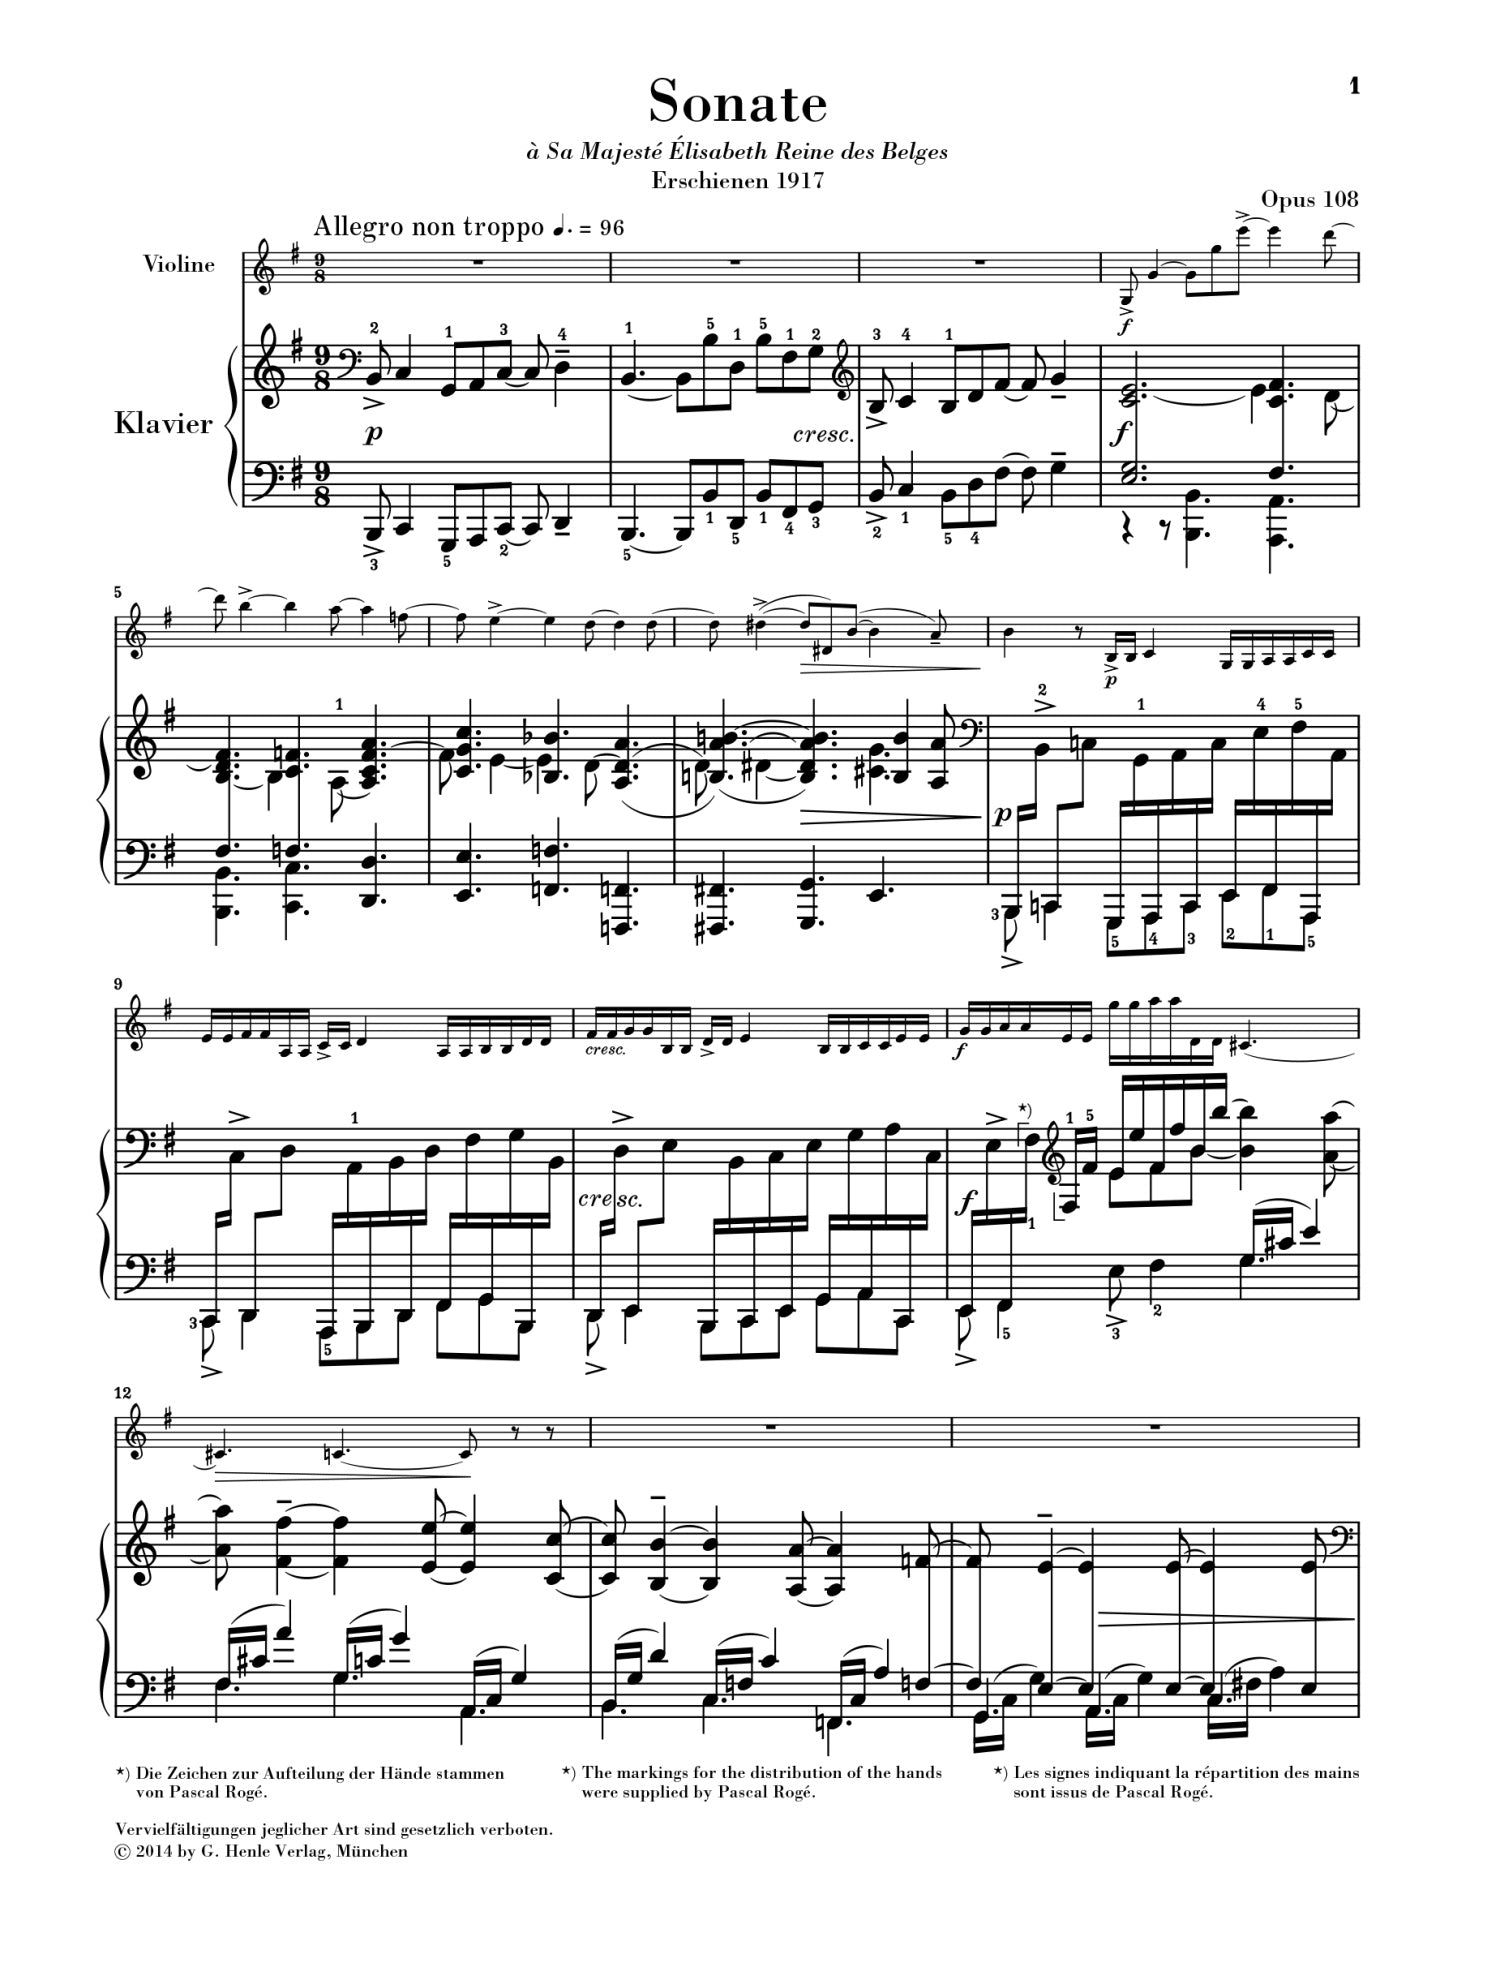 Faure: Violin Sonata no. 2 e minor op. 108 for Violin & Piano